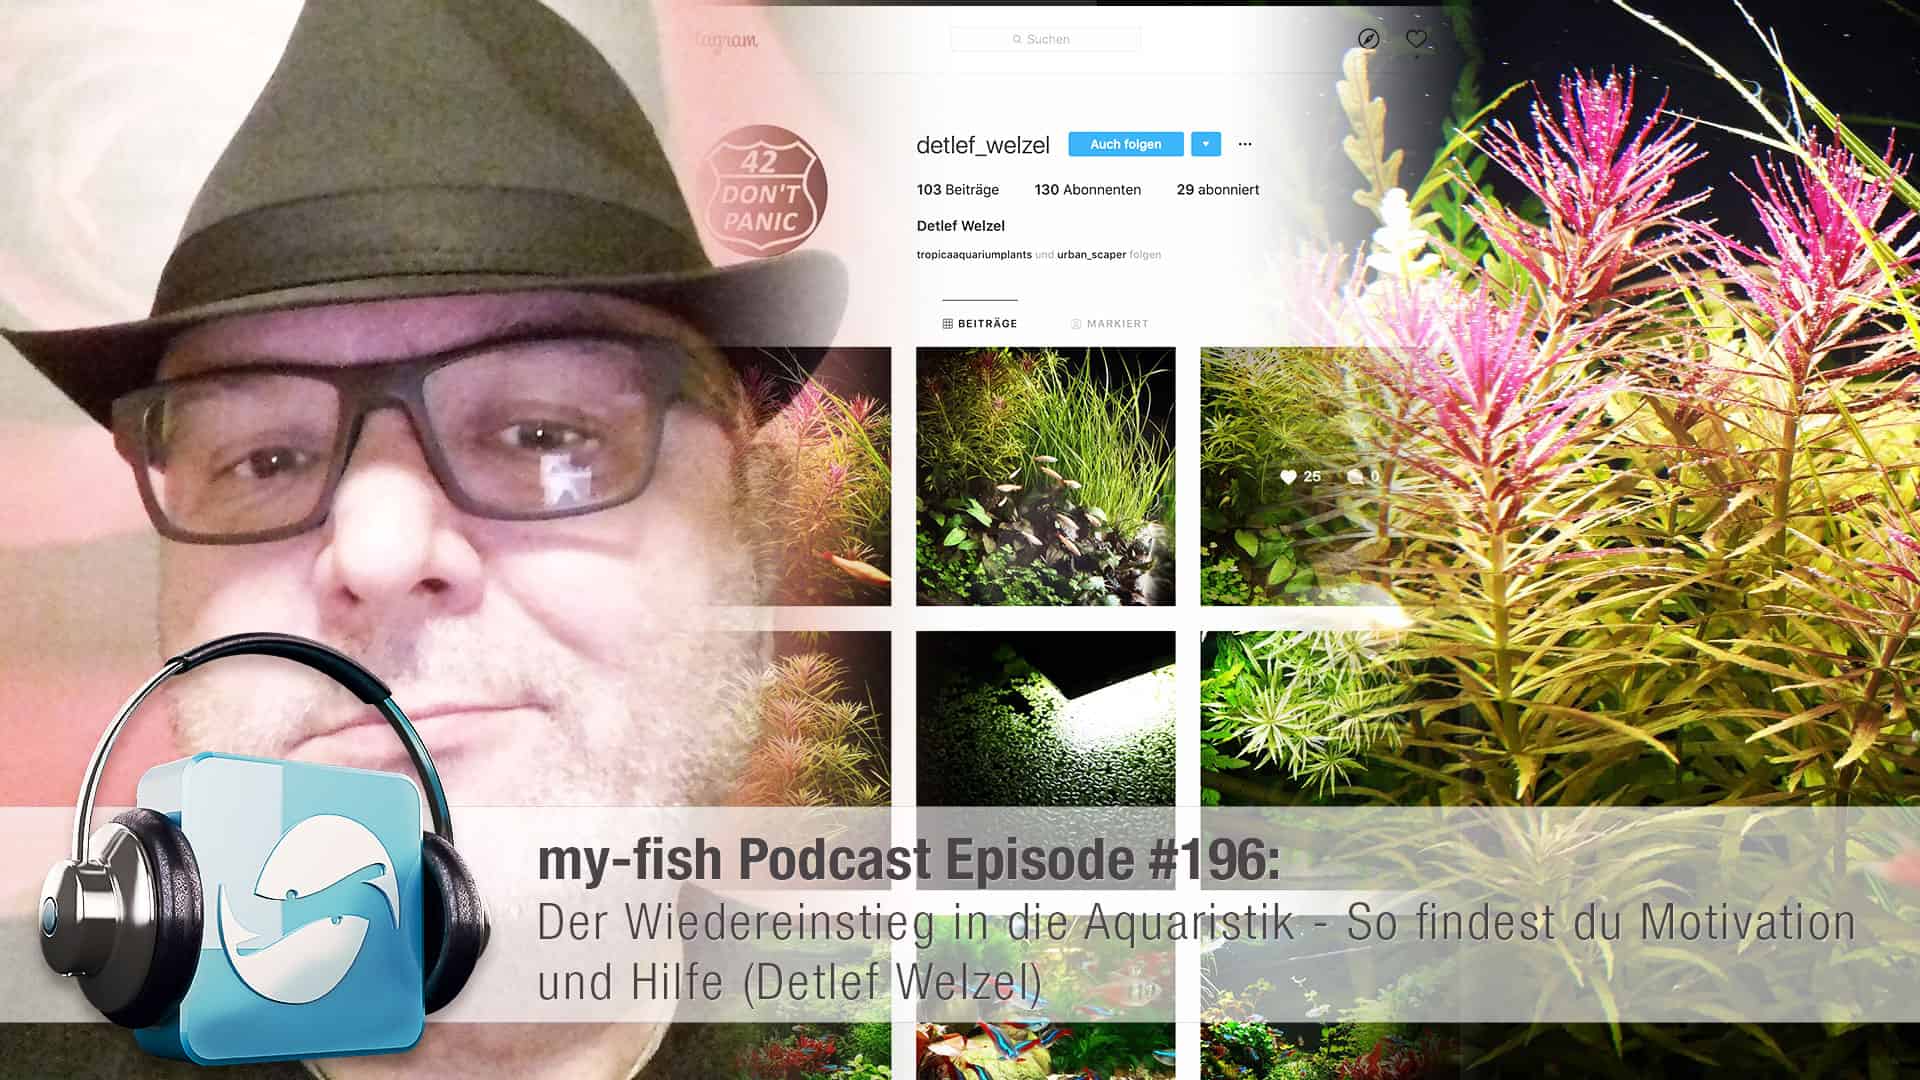 Podcast Episode #196: Der Wiedereinstieg in die Aquaristik - So findest du Motivation und Hilfe (Detlef Welzel)